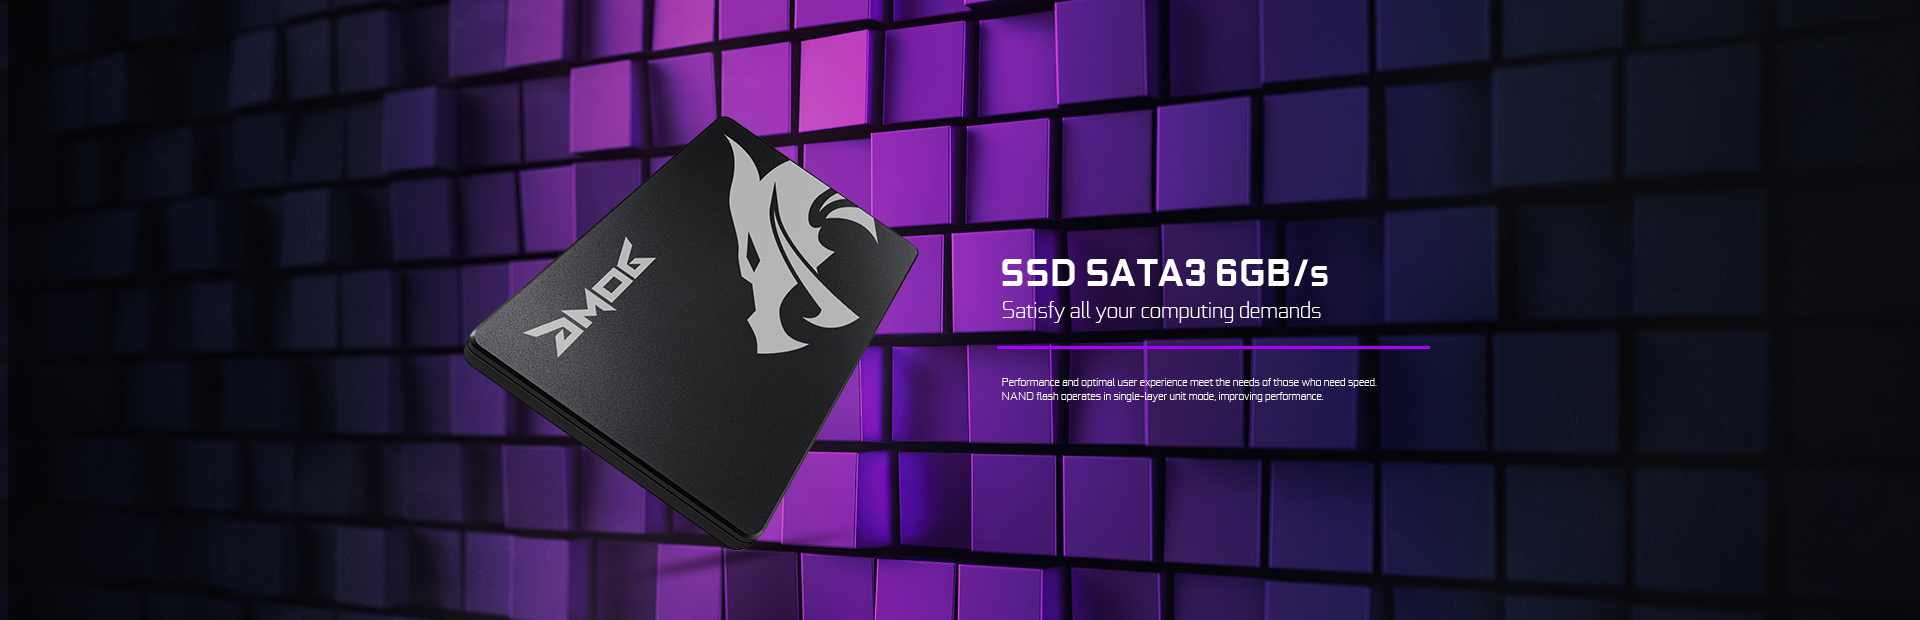 1TB SATA 3.0 SSD